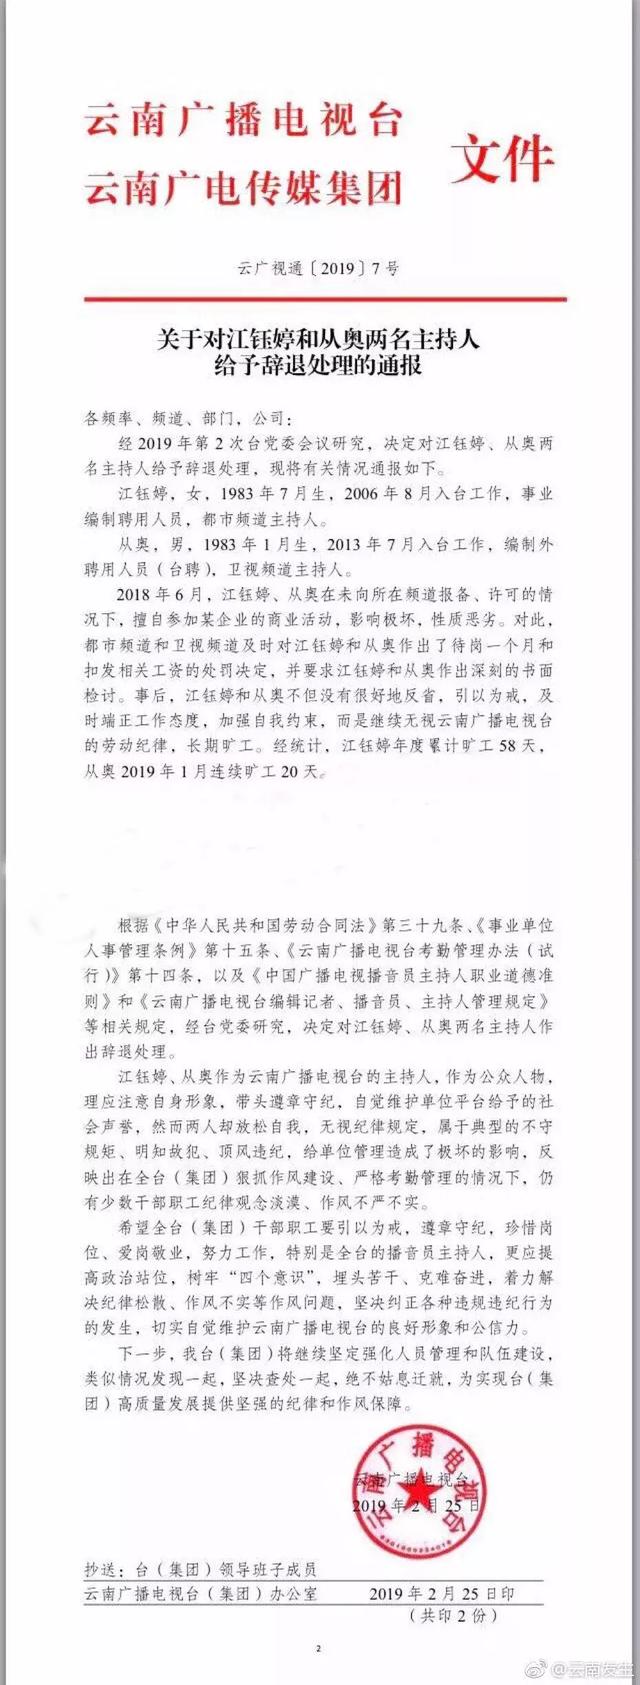 关于云南电视台主持人小咪渣江钰婷夫妇被辞退一事的处理通报